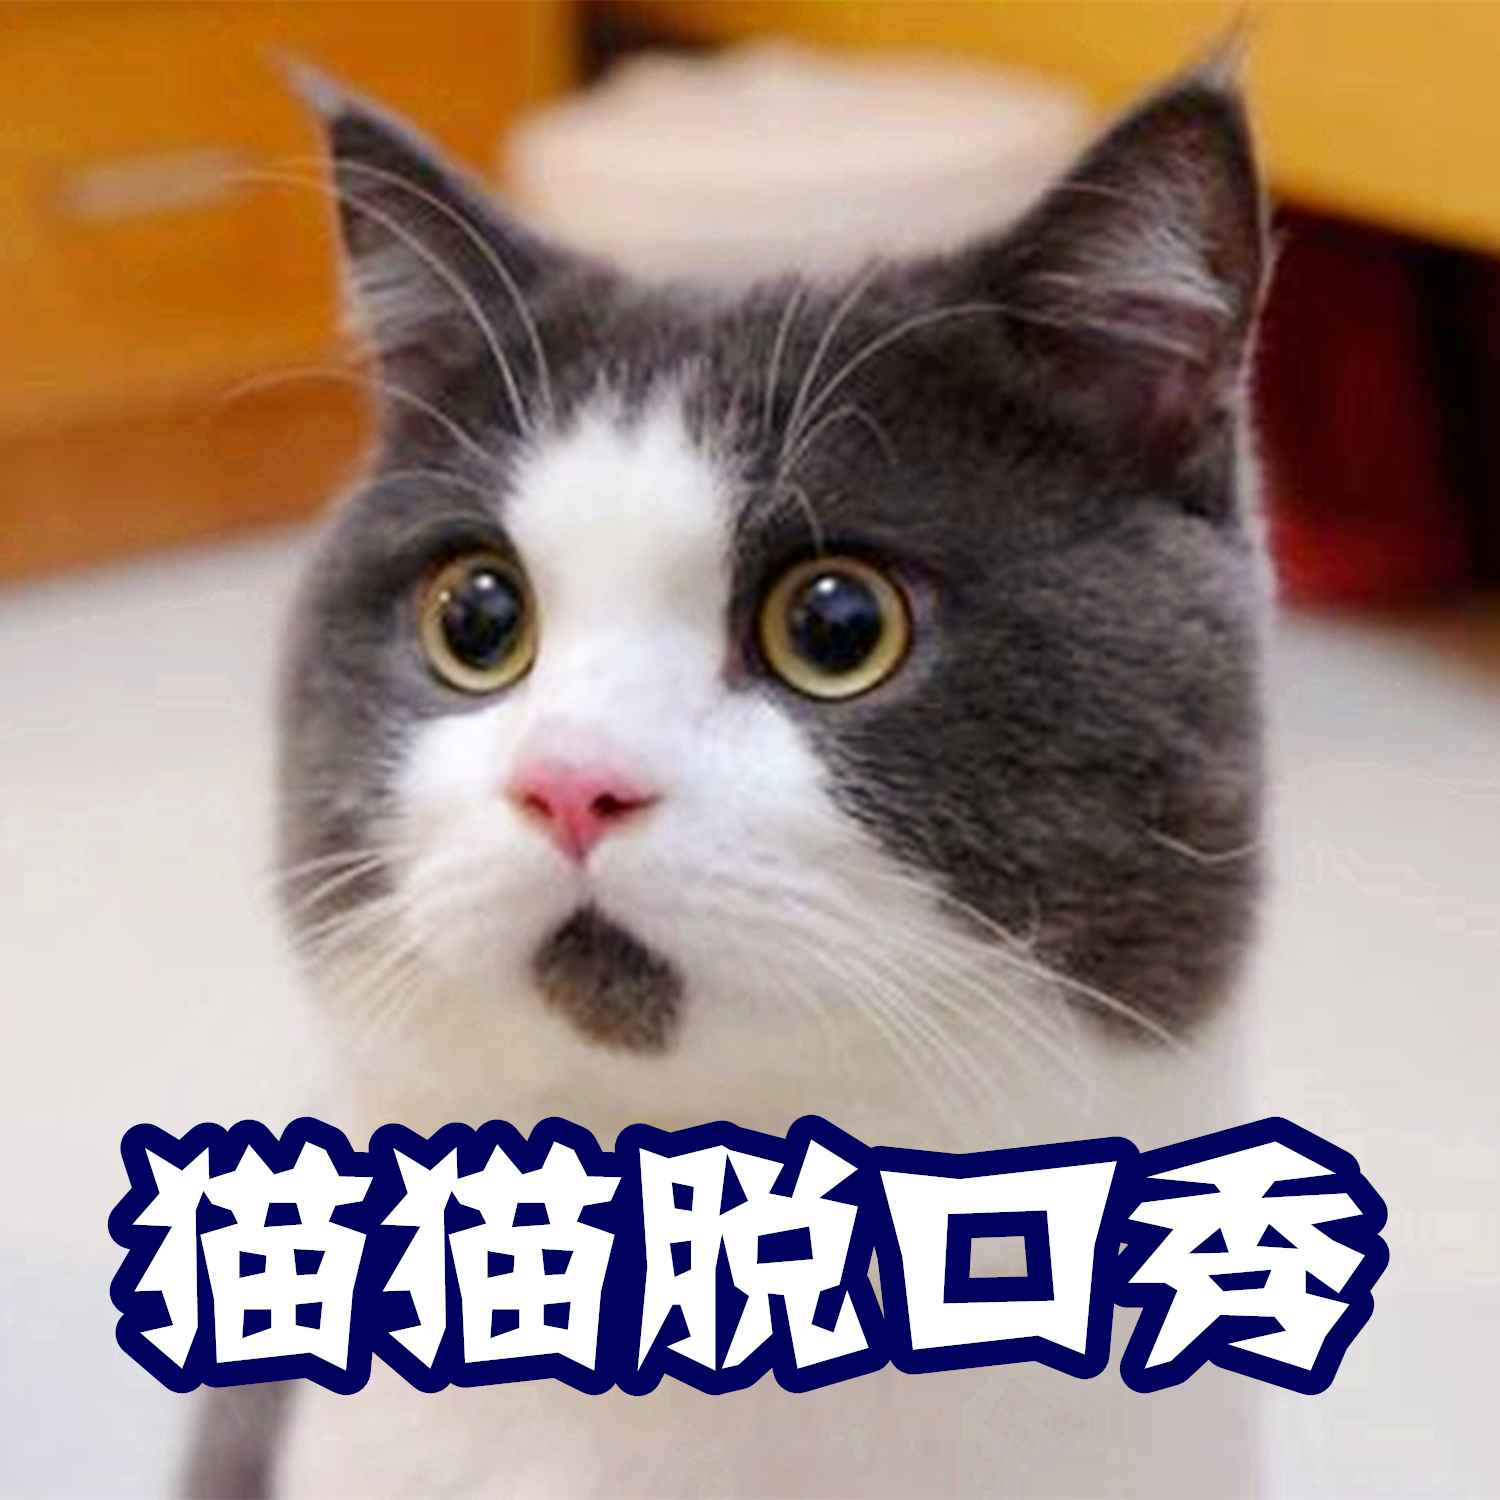 【猫猫脱口秀】-猫猫村长哟-猫猫村长-佚名